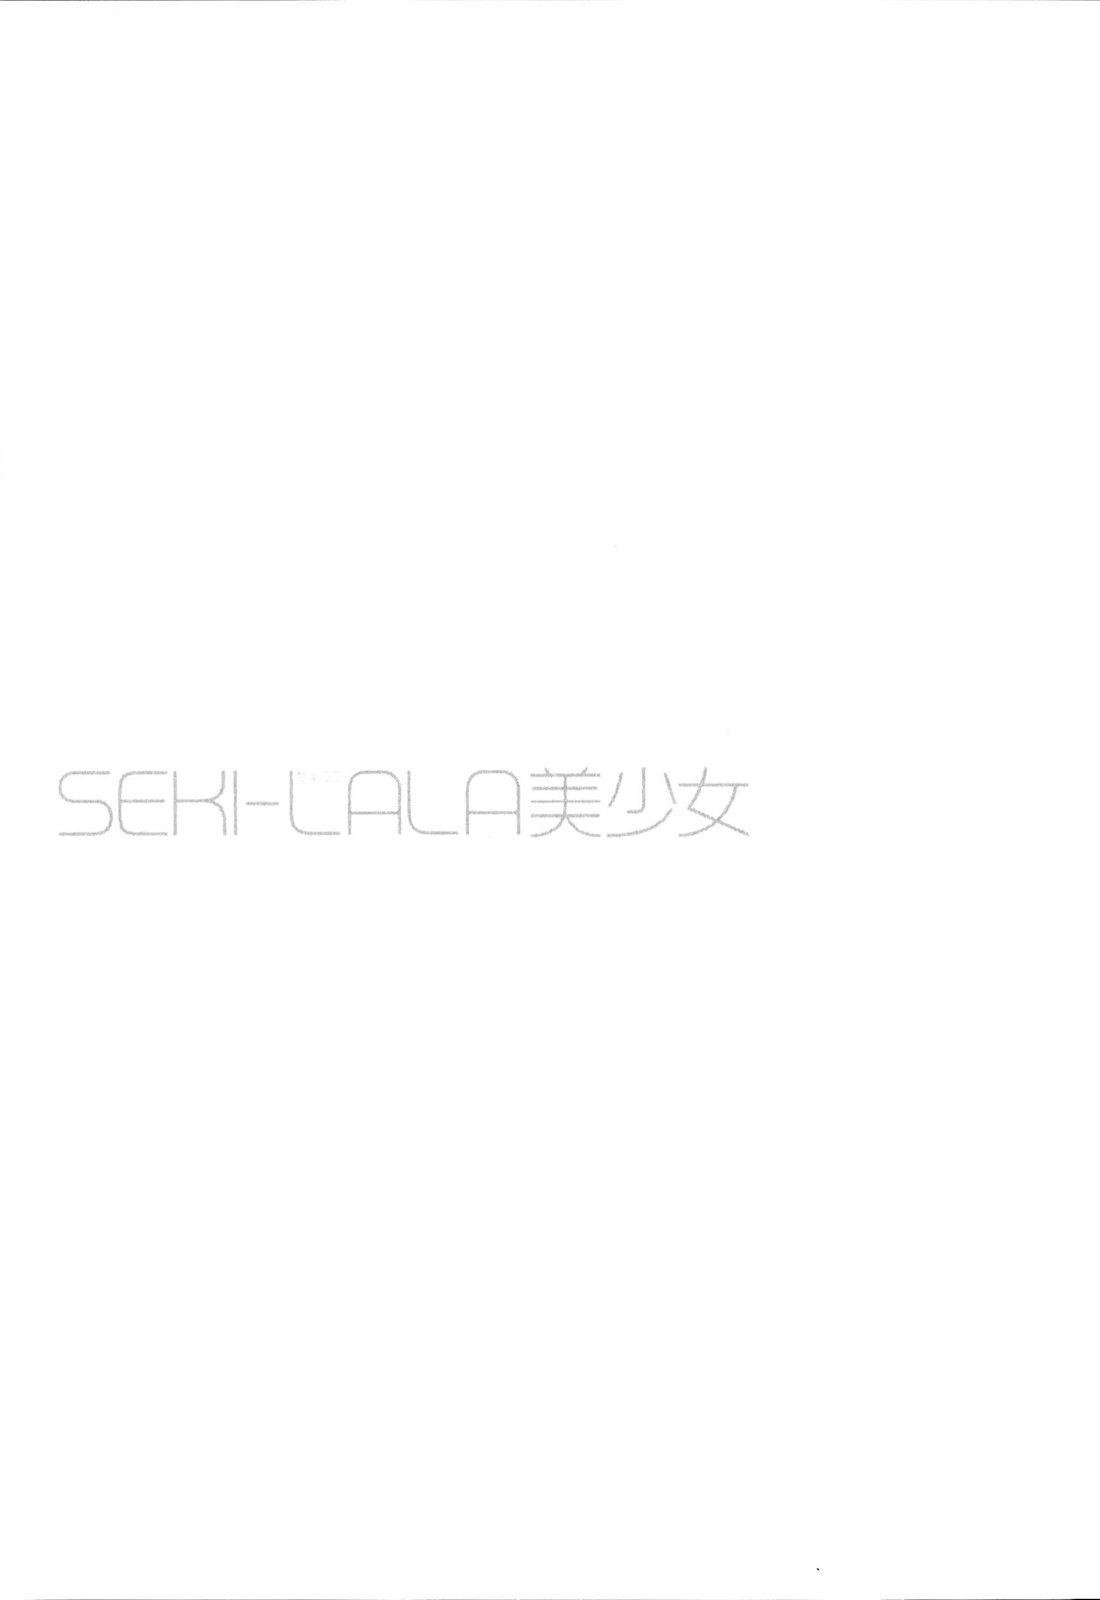 SEKI-LALA Bishoujo 105